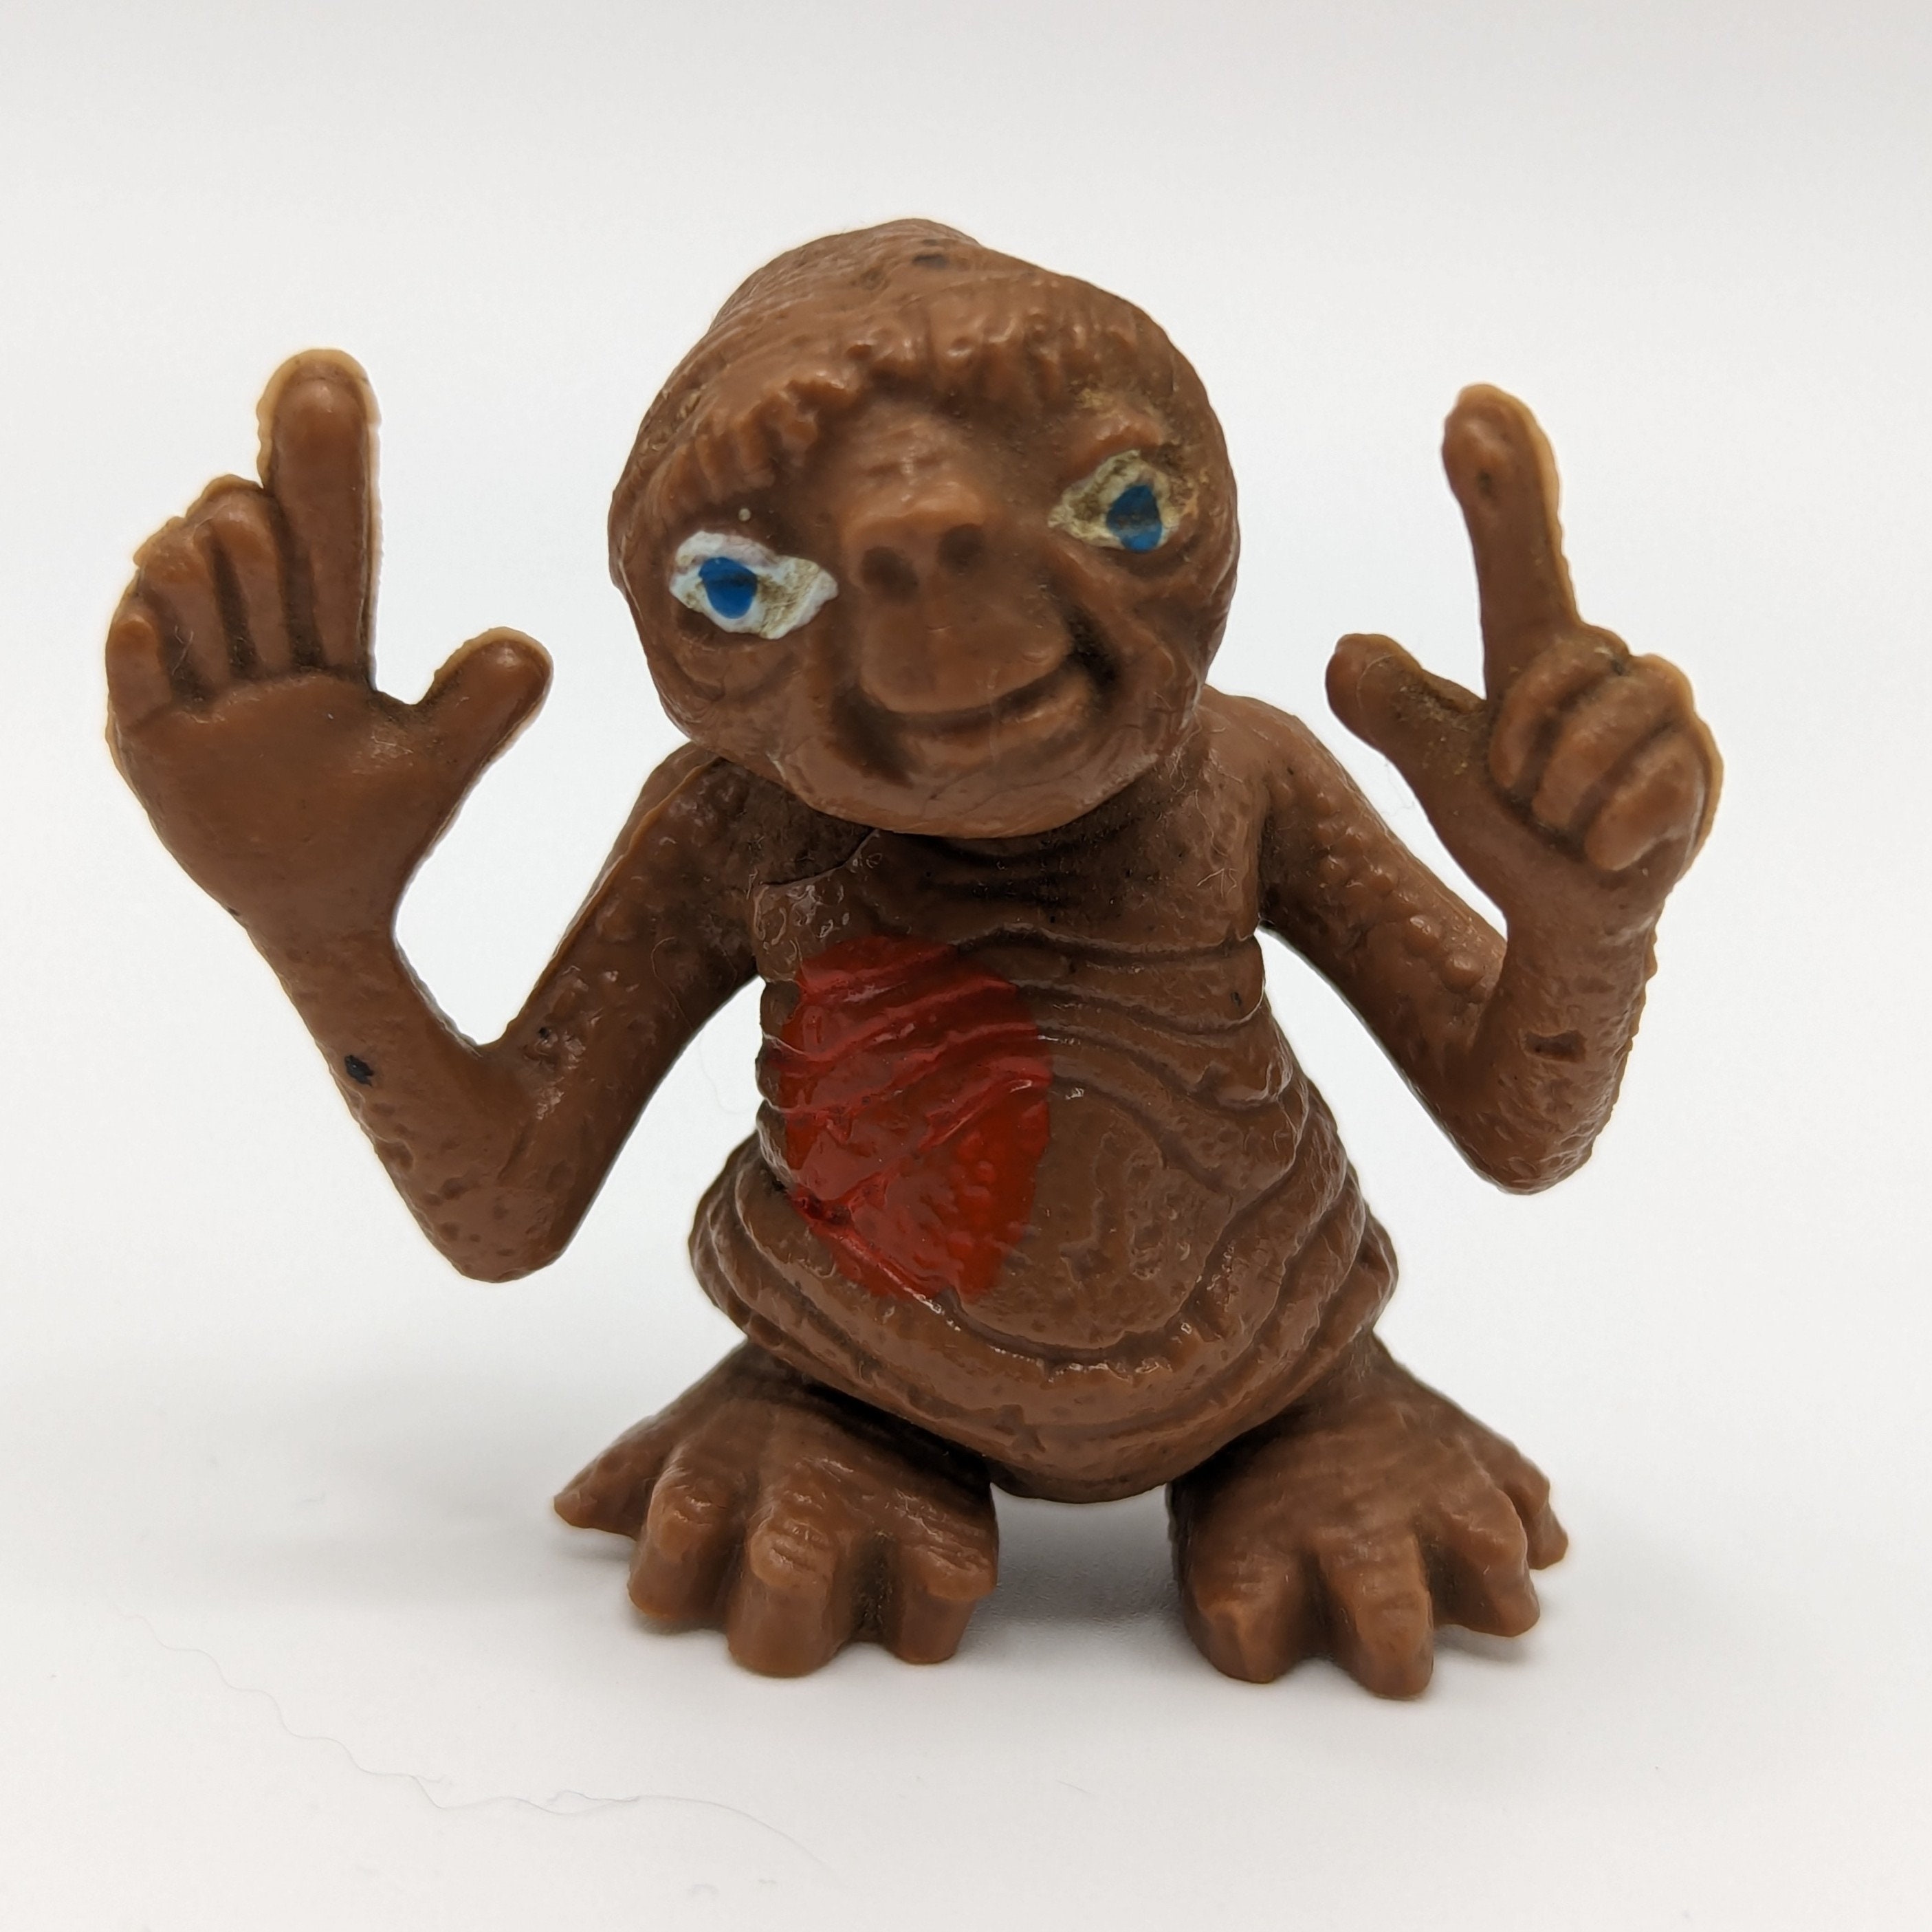 Neca Figura E.T. El Extraterrestre 12 cm Marrón